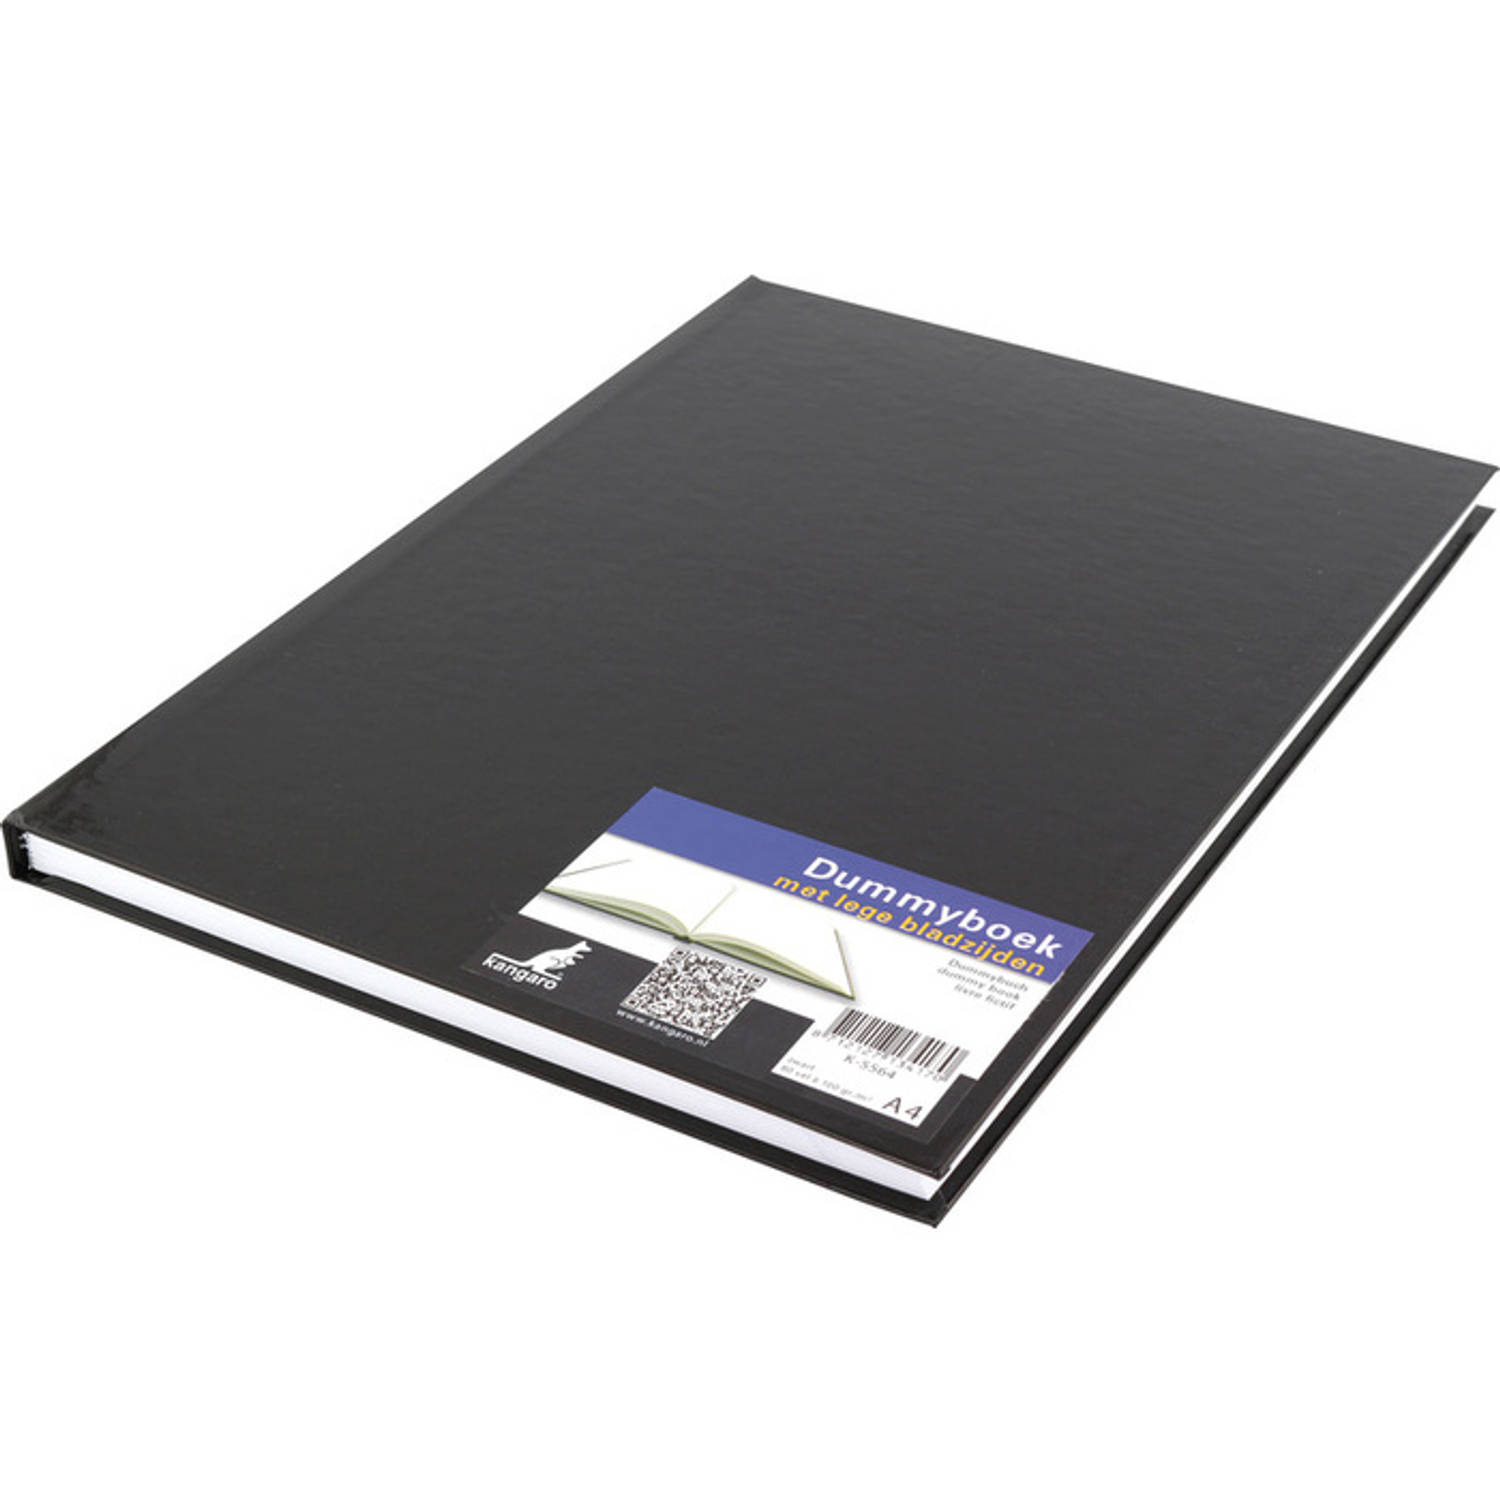 Kangaro dummyboek - A4 - zwart - 160 blanco pagina's - hard cover - K-5564